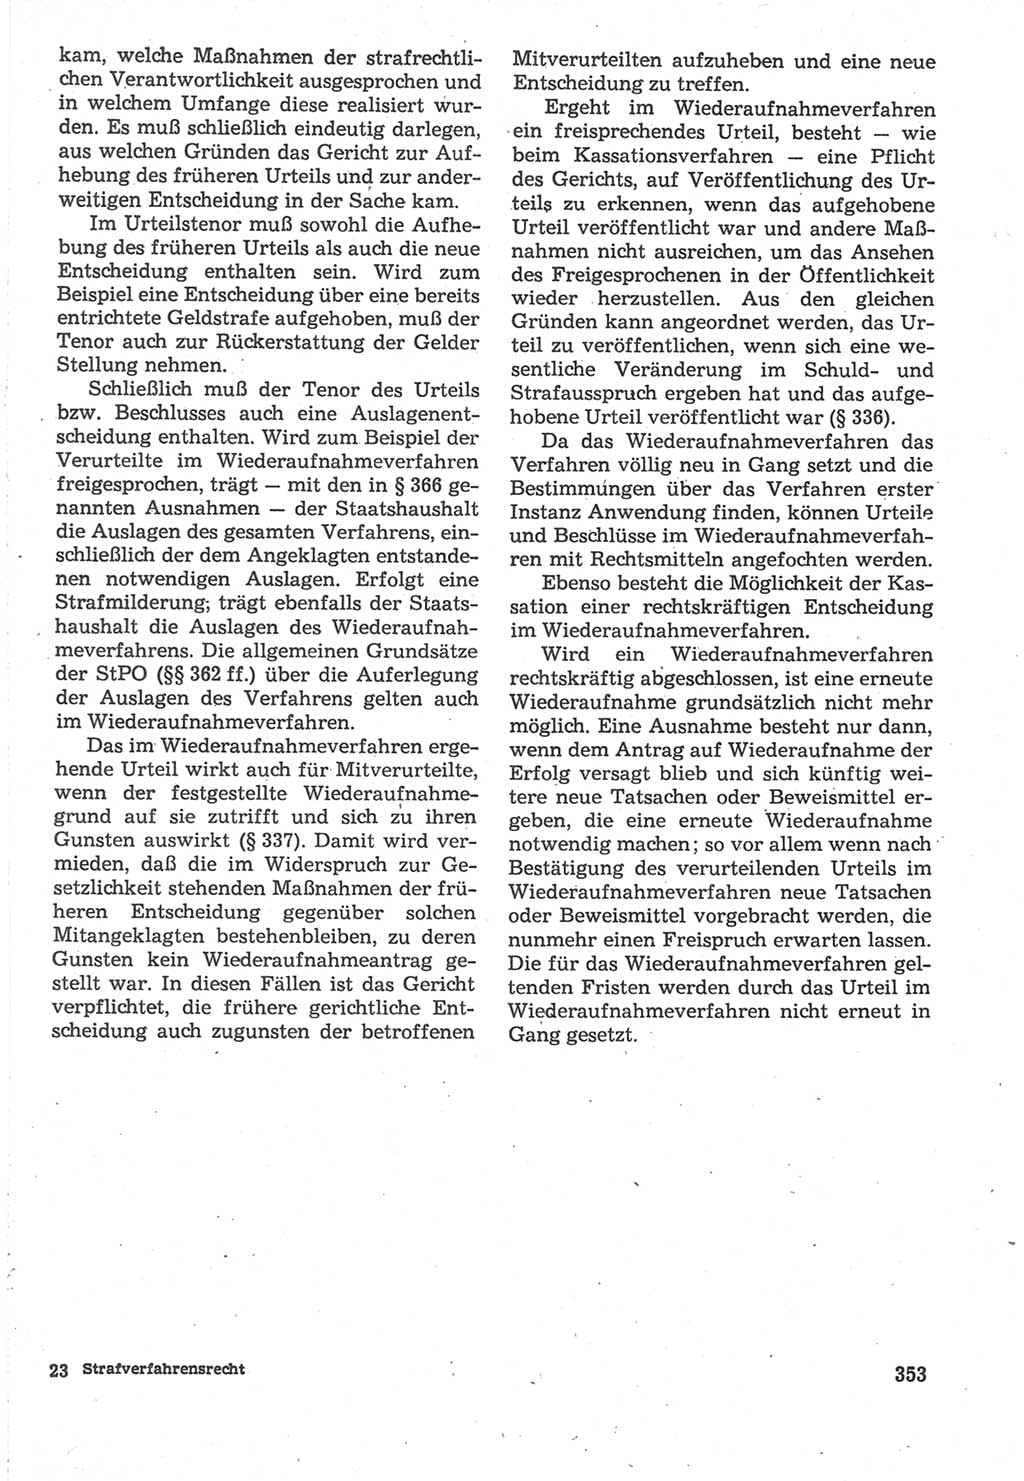 Strafverfahrensrecht [Deutsche Demokratische Republik (DDR)], Lehrbuch 1987, Seite 353 (Strafverf.-R. DDR Lb. 1987, S. 353)